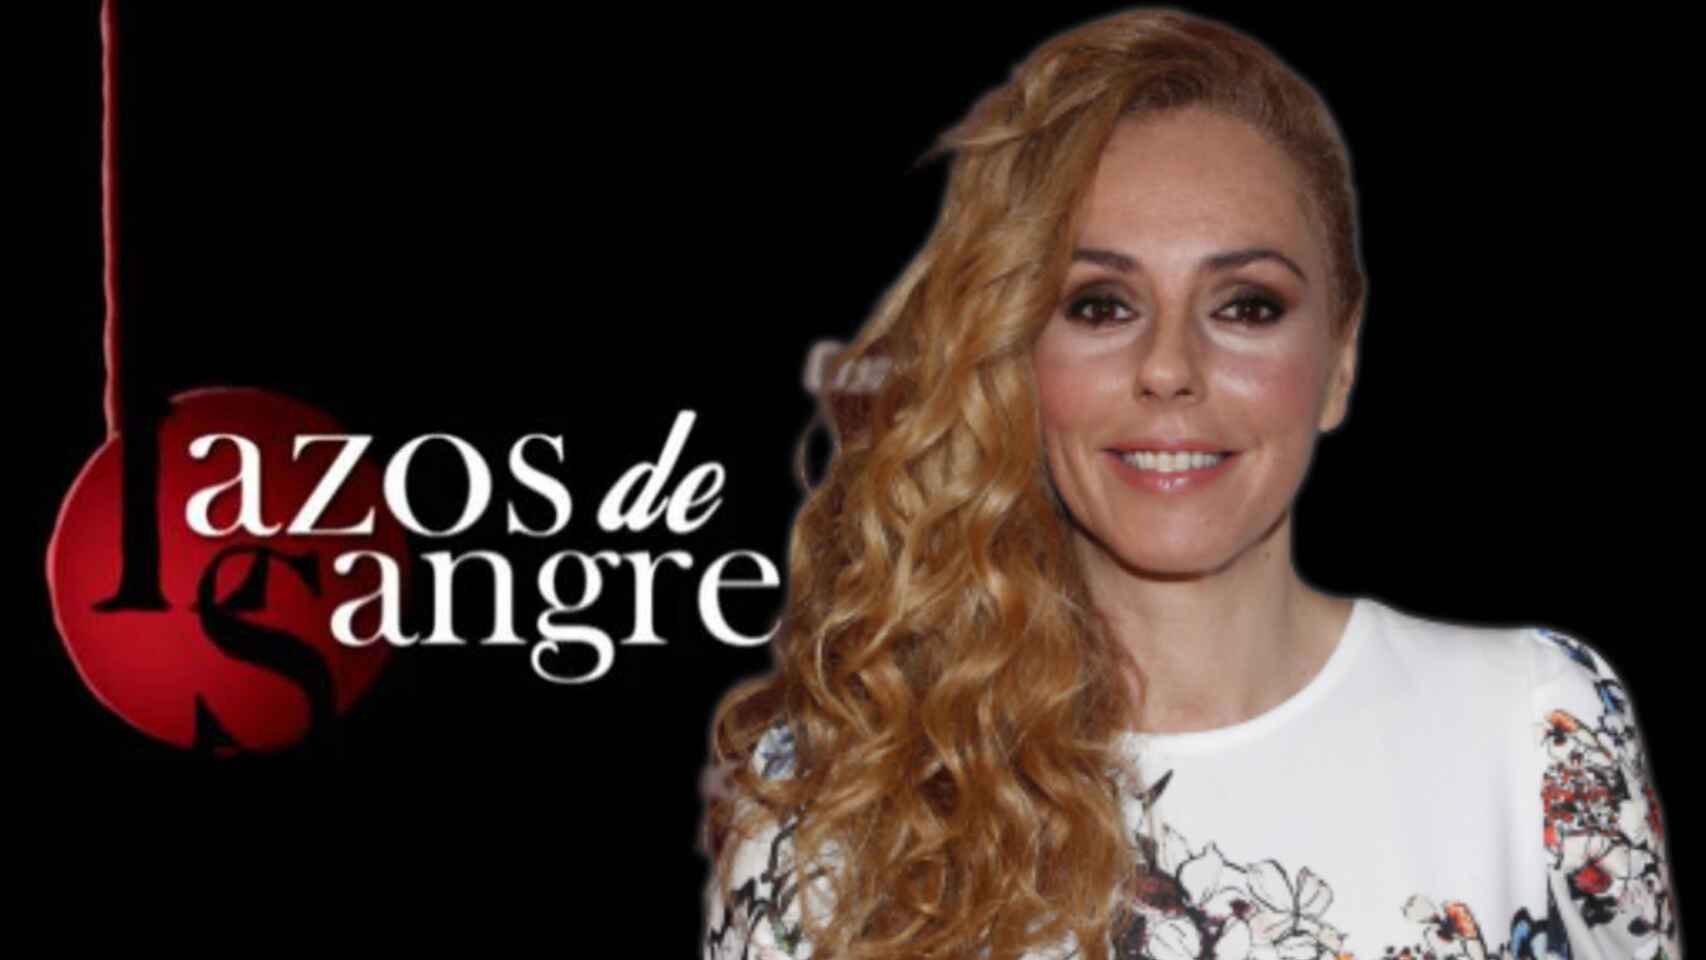 Rocío Carrasco colaborará en 'Lazos de sangre'.